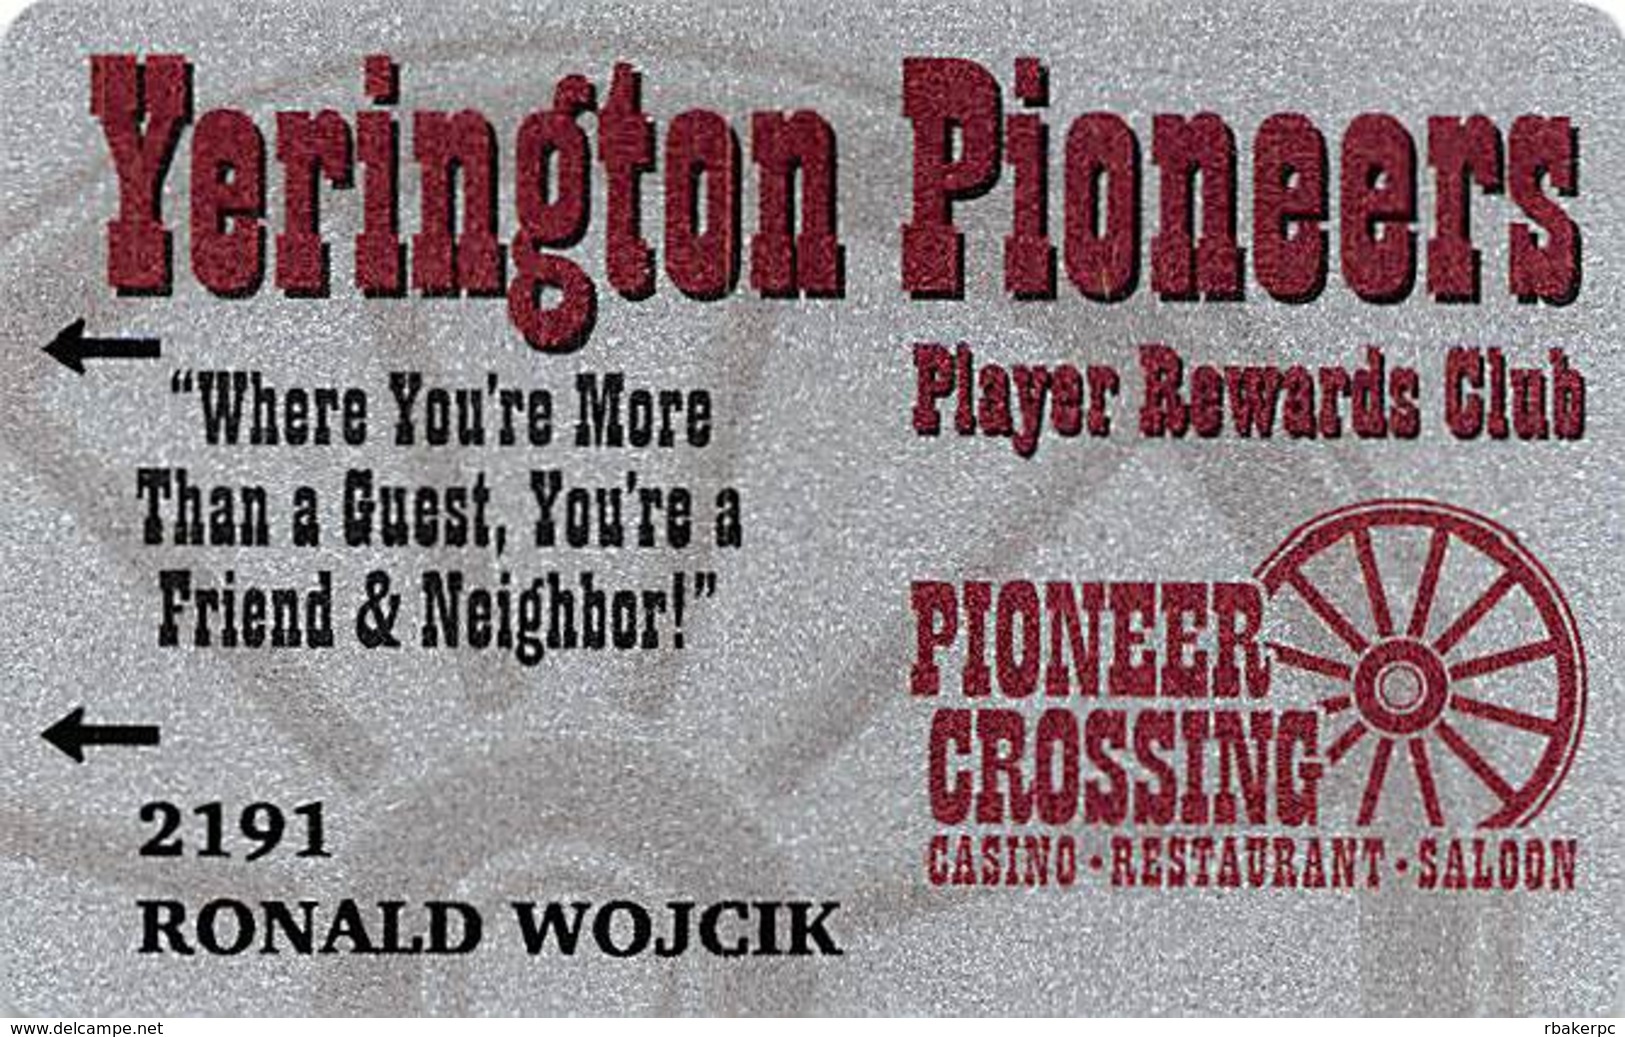 Yerington Pioneer Crossing Casino - Yerington, NV - Slot Card - Cartes De Casino